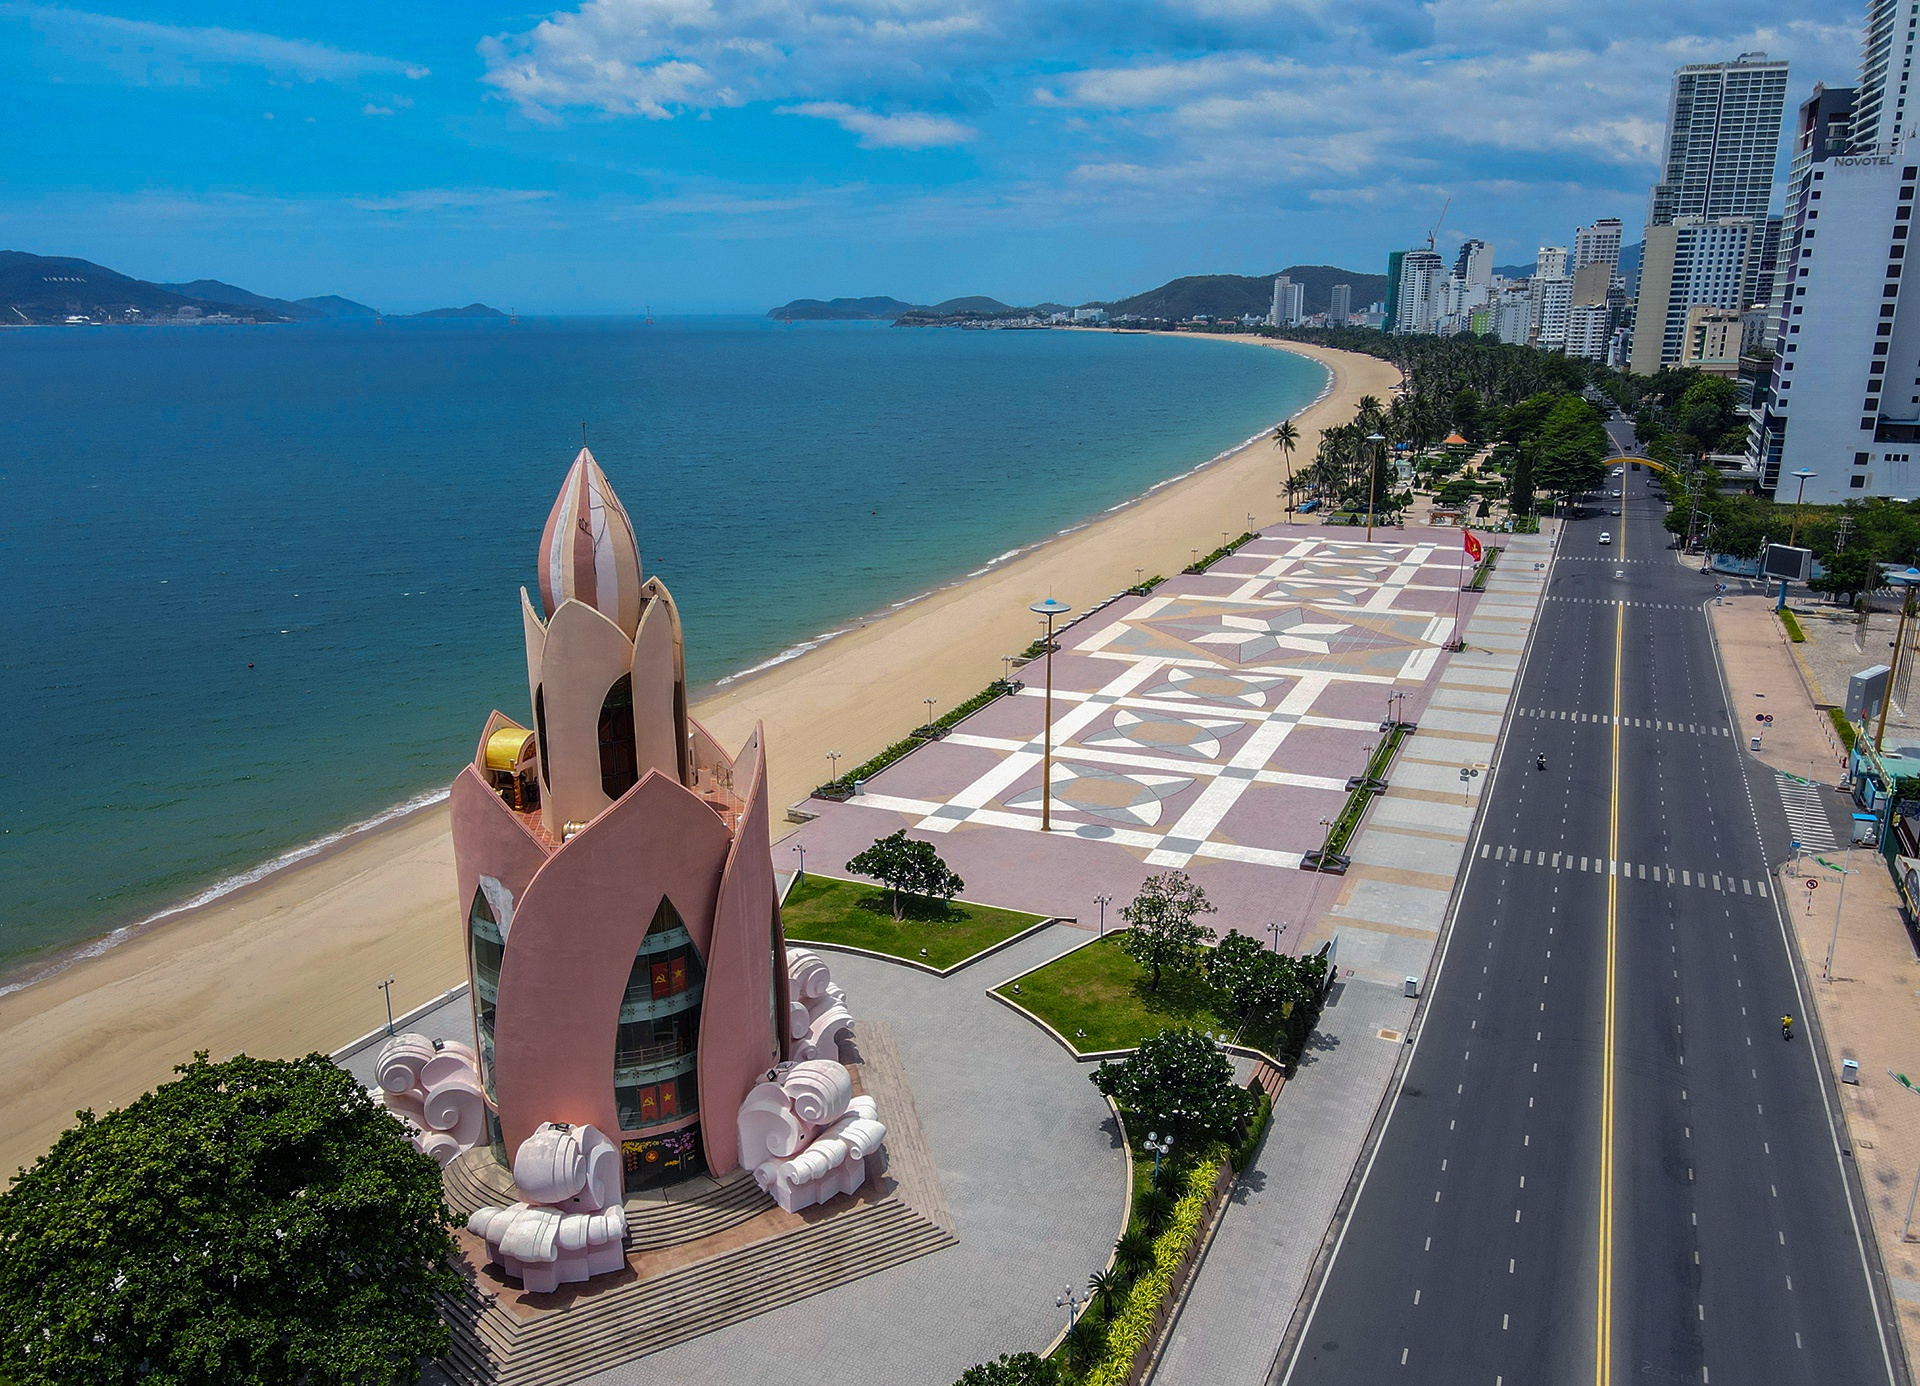 Bãi biển, danh thắng ở Nha Trang nhìn từ trên cao - Ảnh 4.